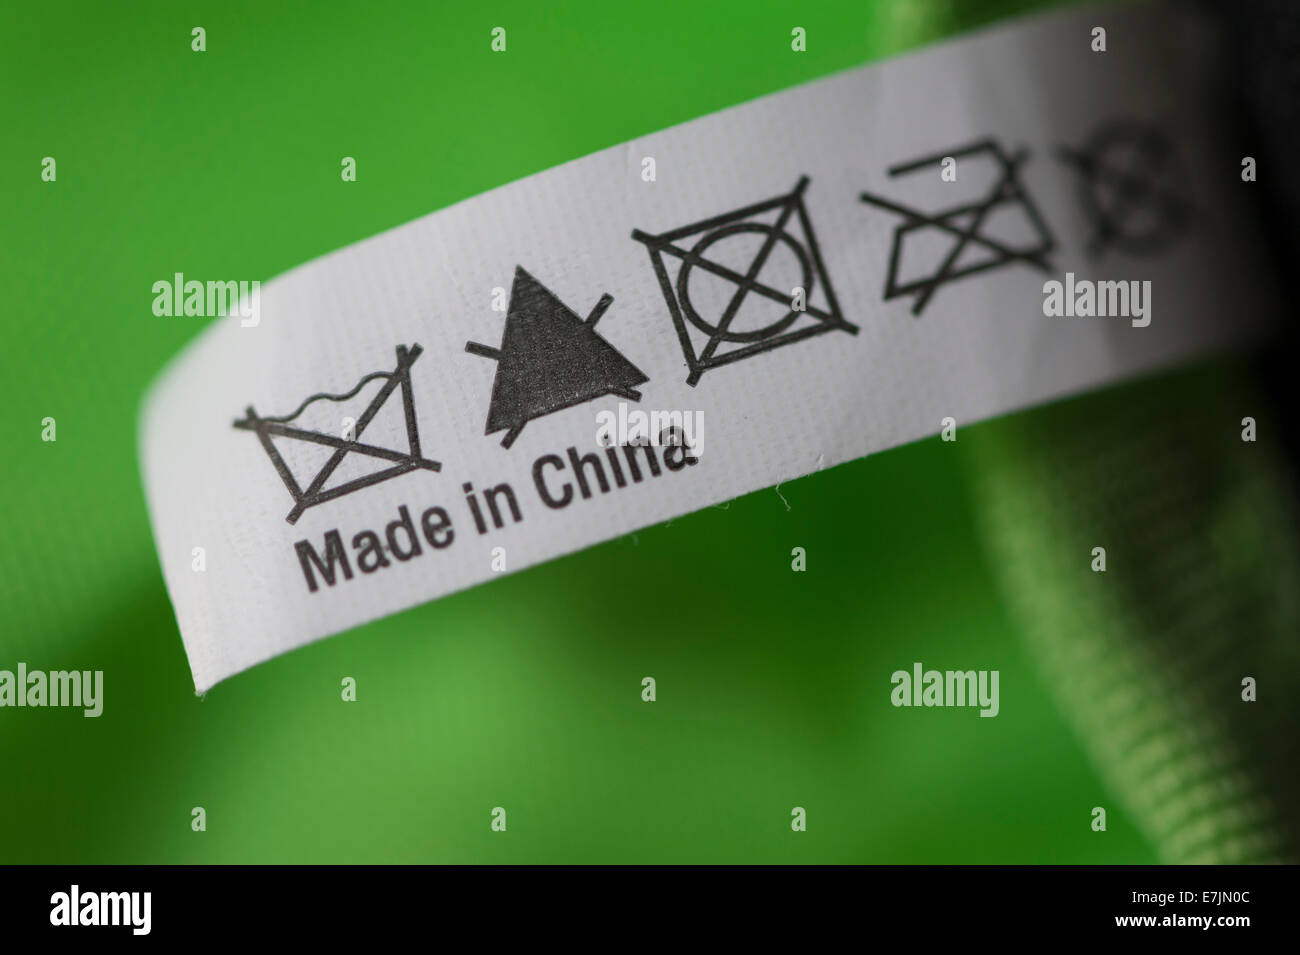 Nahaufnahme von einem Klappentext mit der Aufschrift "Made in China" auf ein Stück Ware Stockfoto